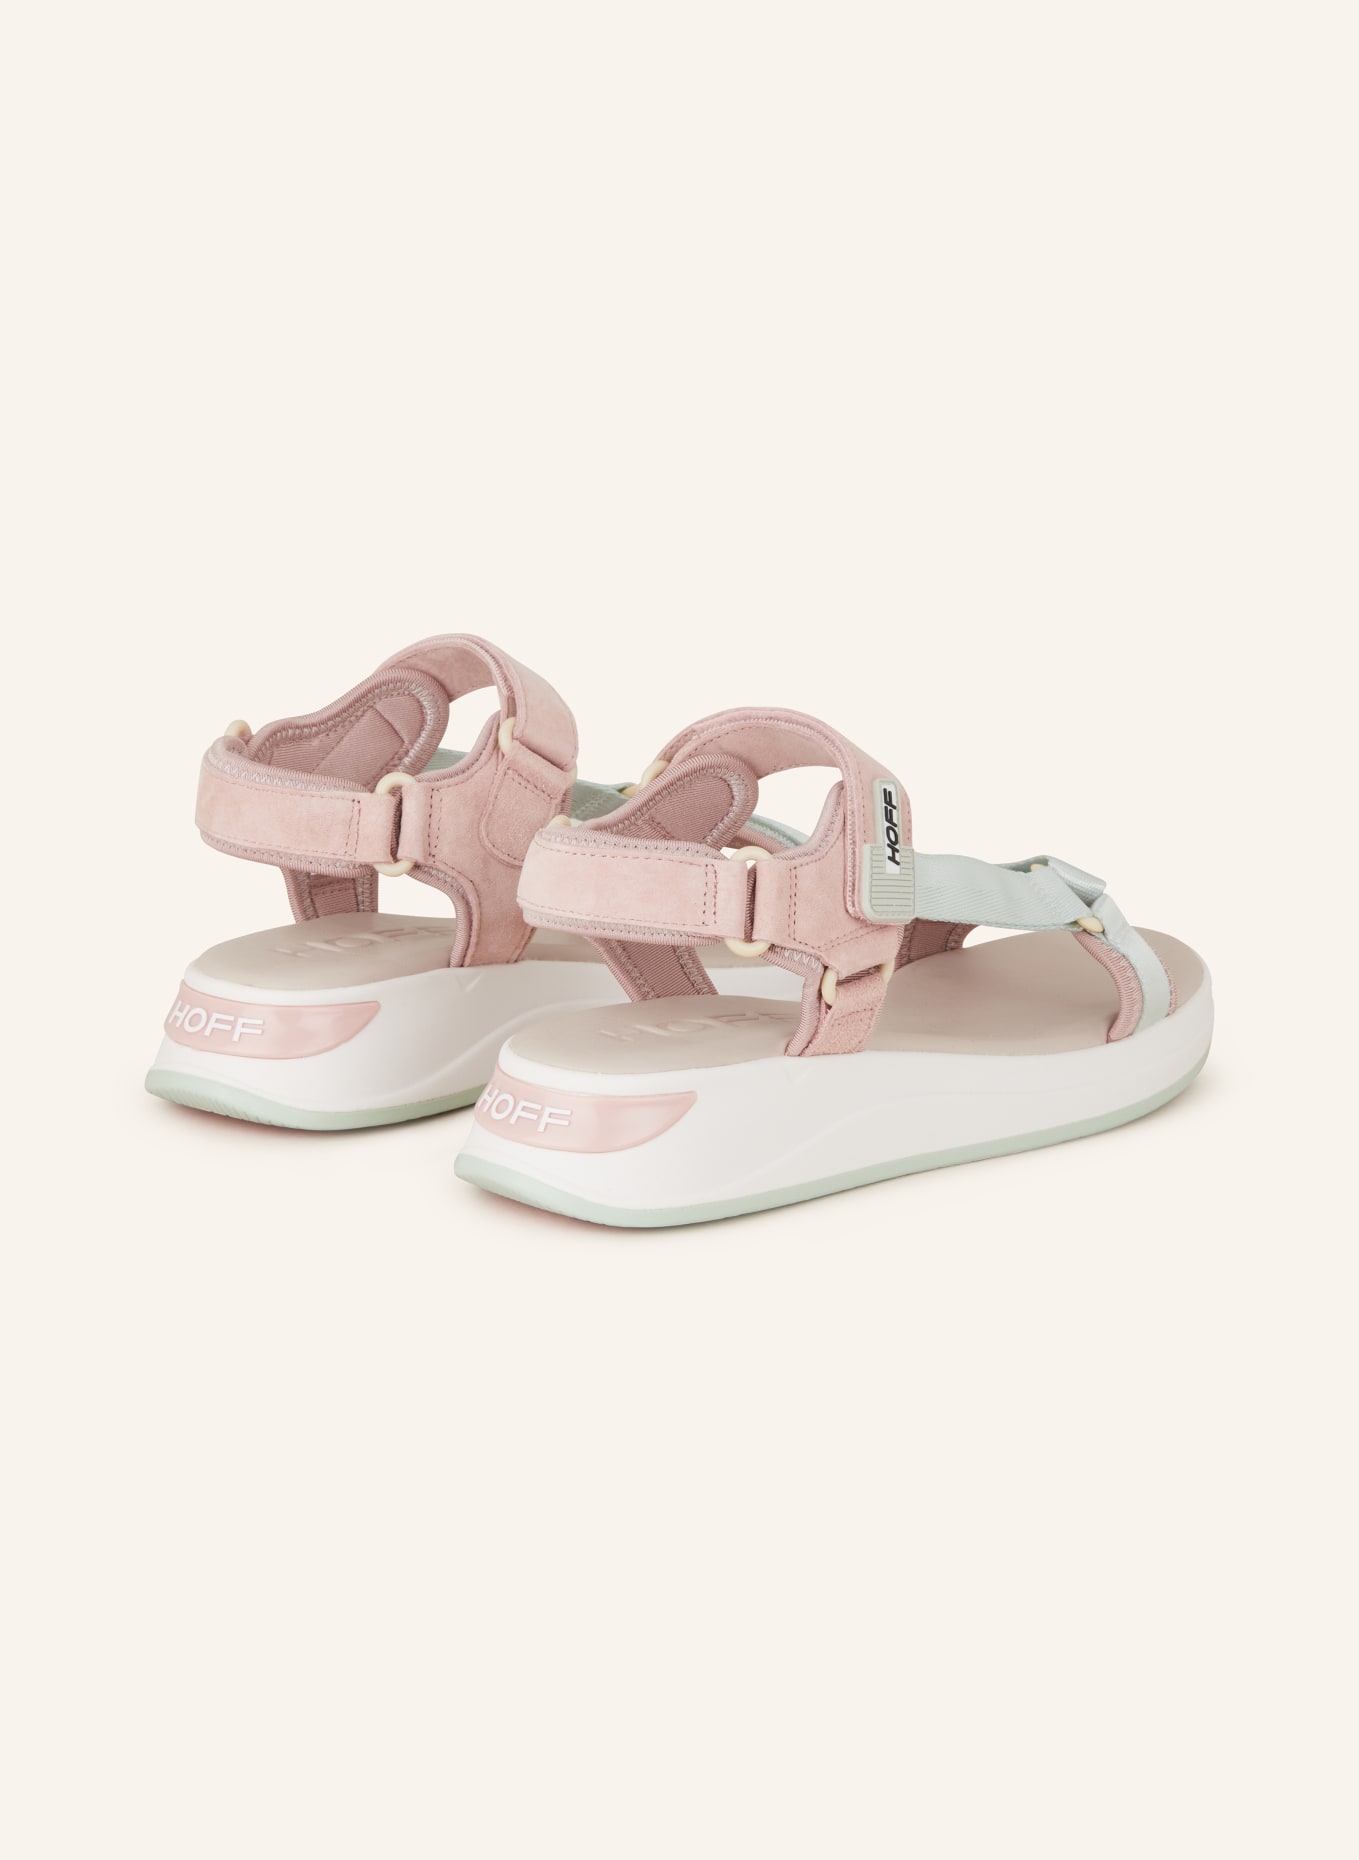 HOFF Sandals MARTINICA, Color: ROSE/ MINT (Image 2)